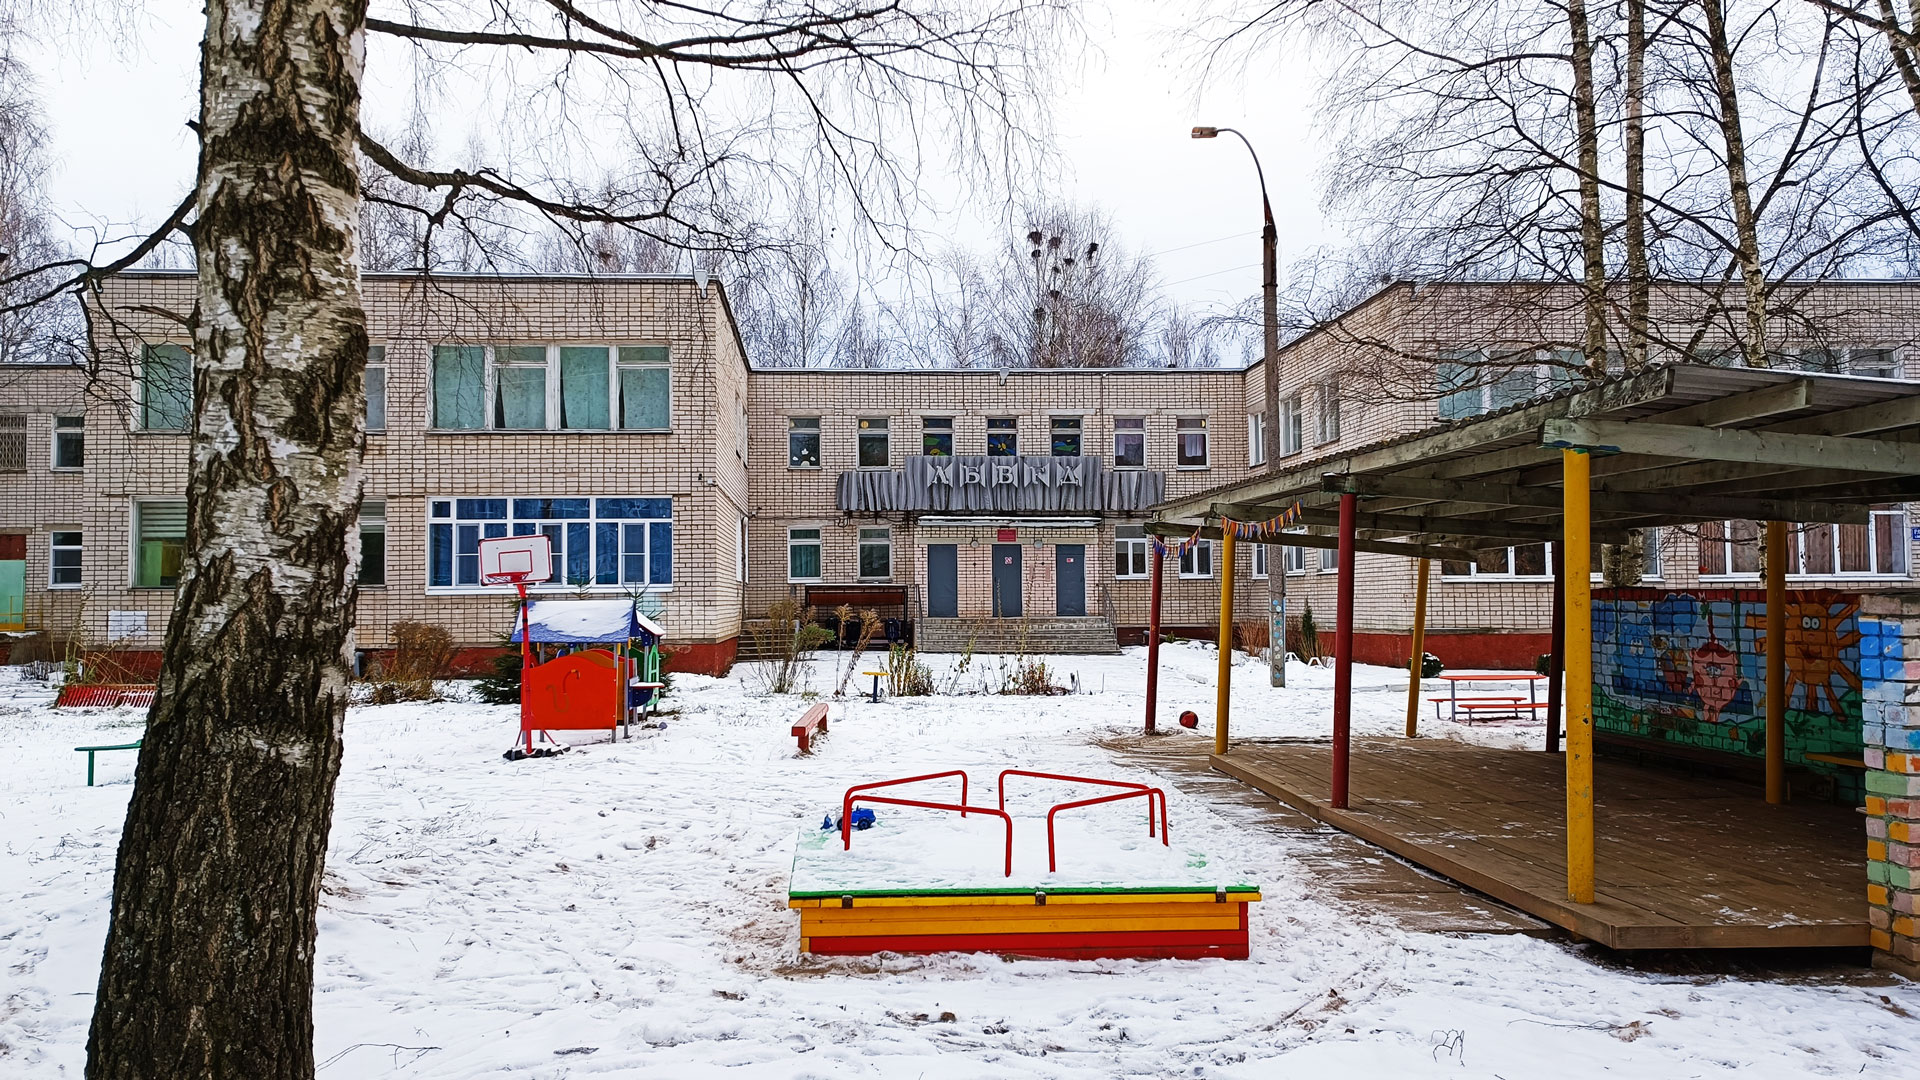 Детский сад 20 Ярославль: общий вид здания.